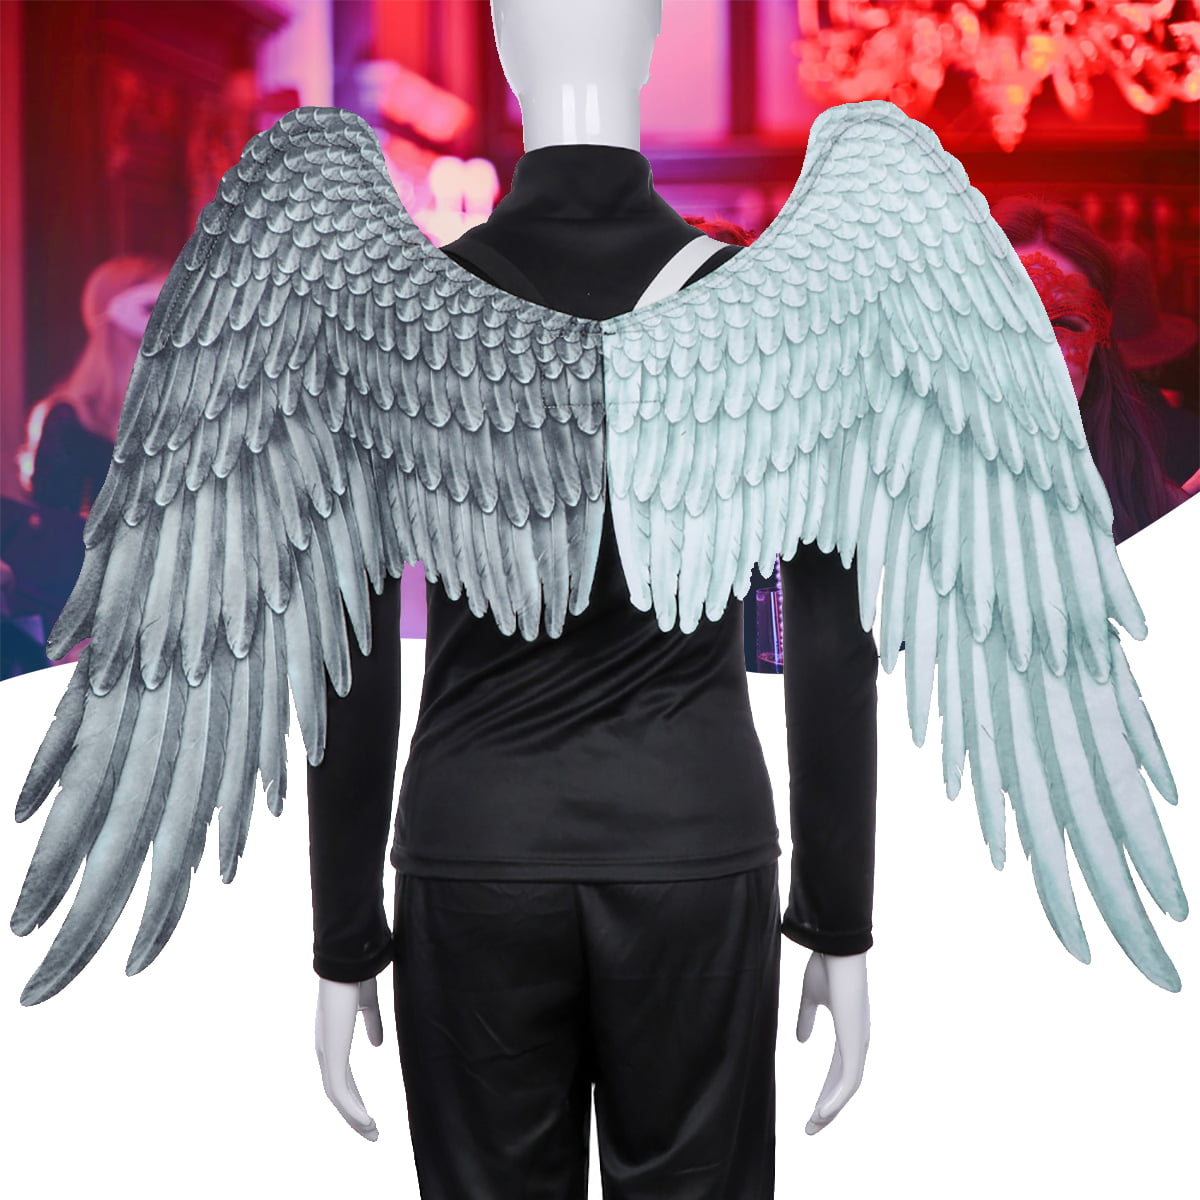 CUCUFA 3D Angel Wings Unisex Halloween Kostüm Zubehör Feder Angel Wings Cosplay Liefert Für Halloween Weihnachtsfeier 1 Stück Schwarz